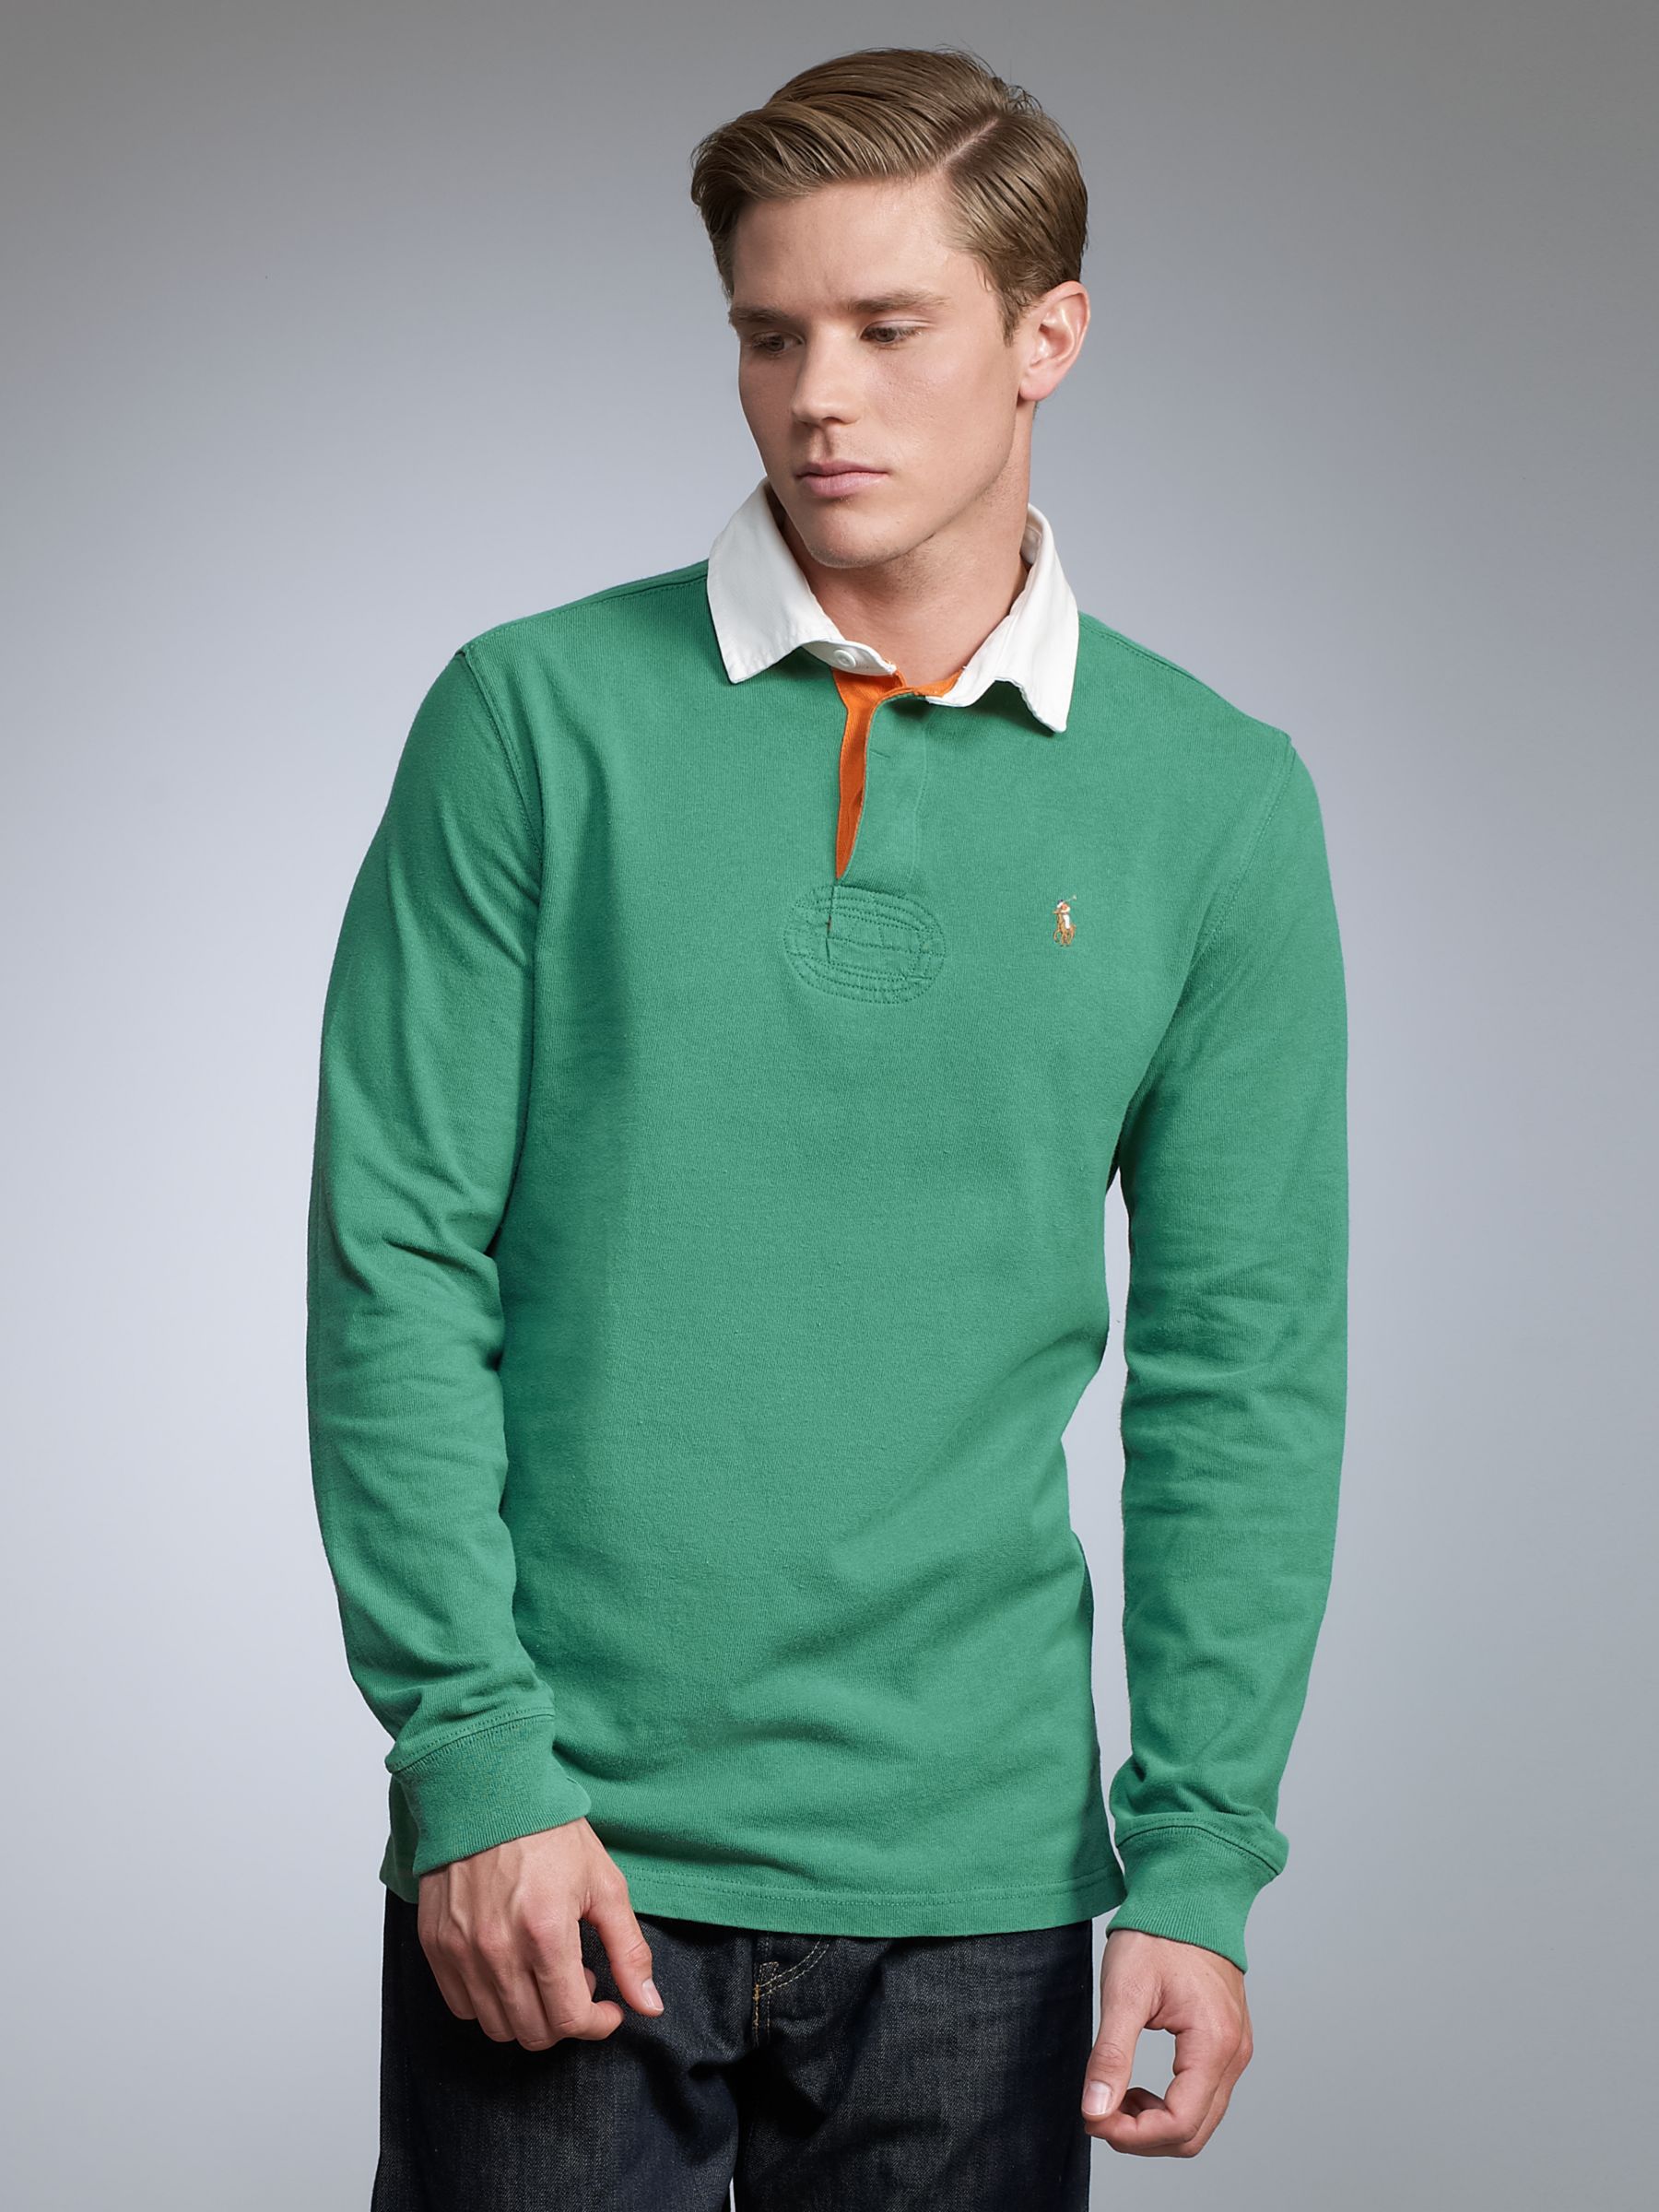 Polo Ralph Lauren Custom Fit Rugby Shirt, Green